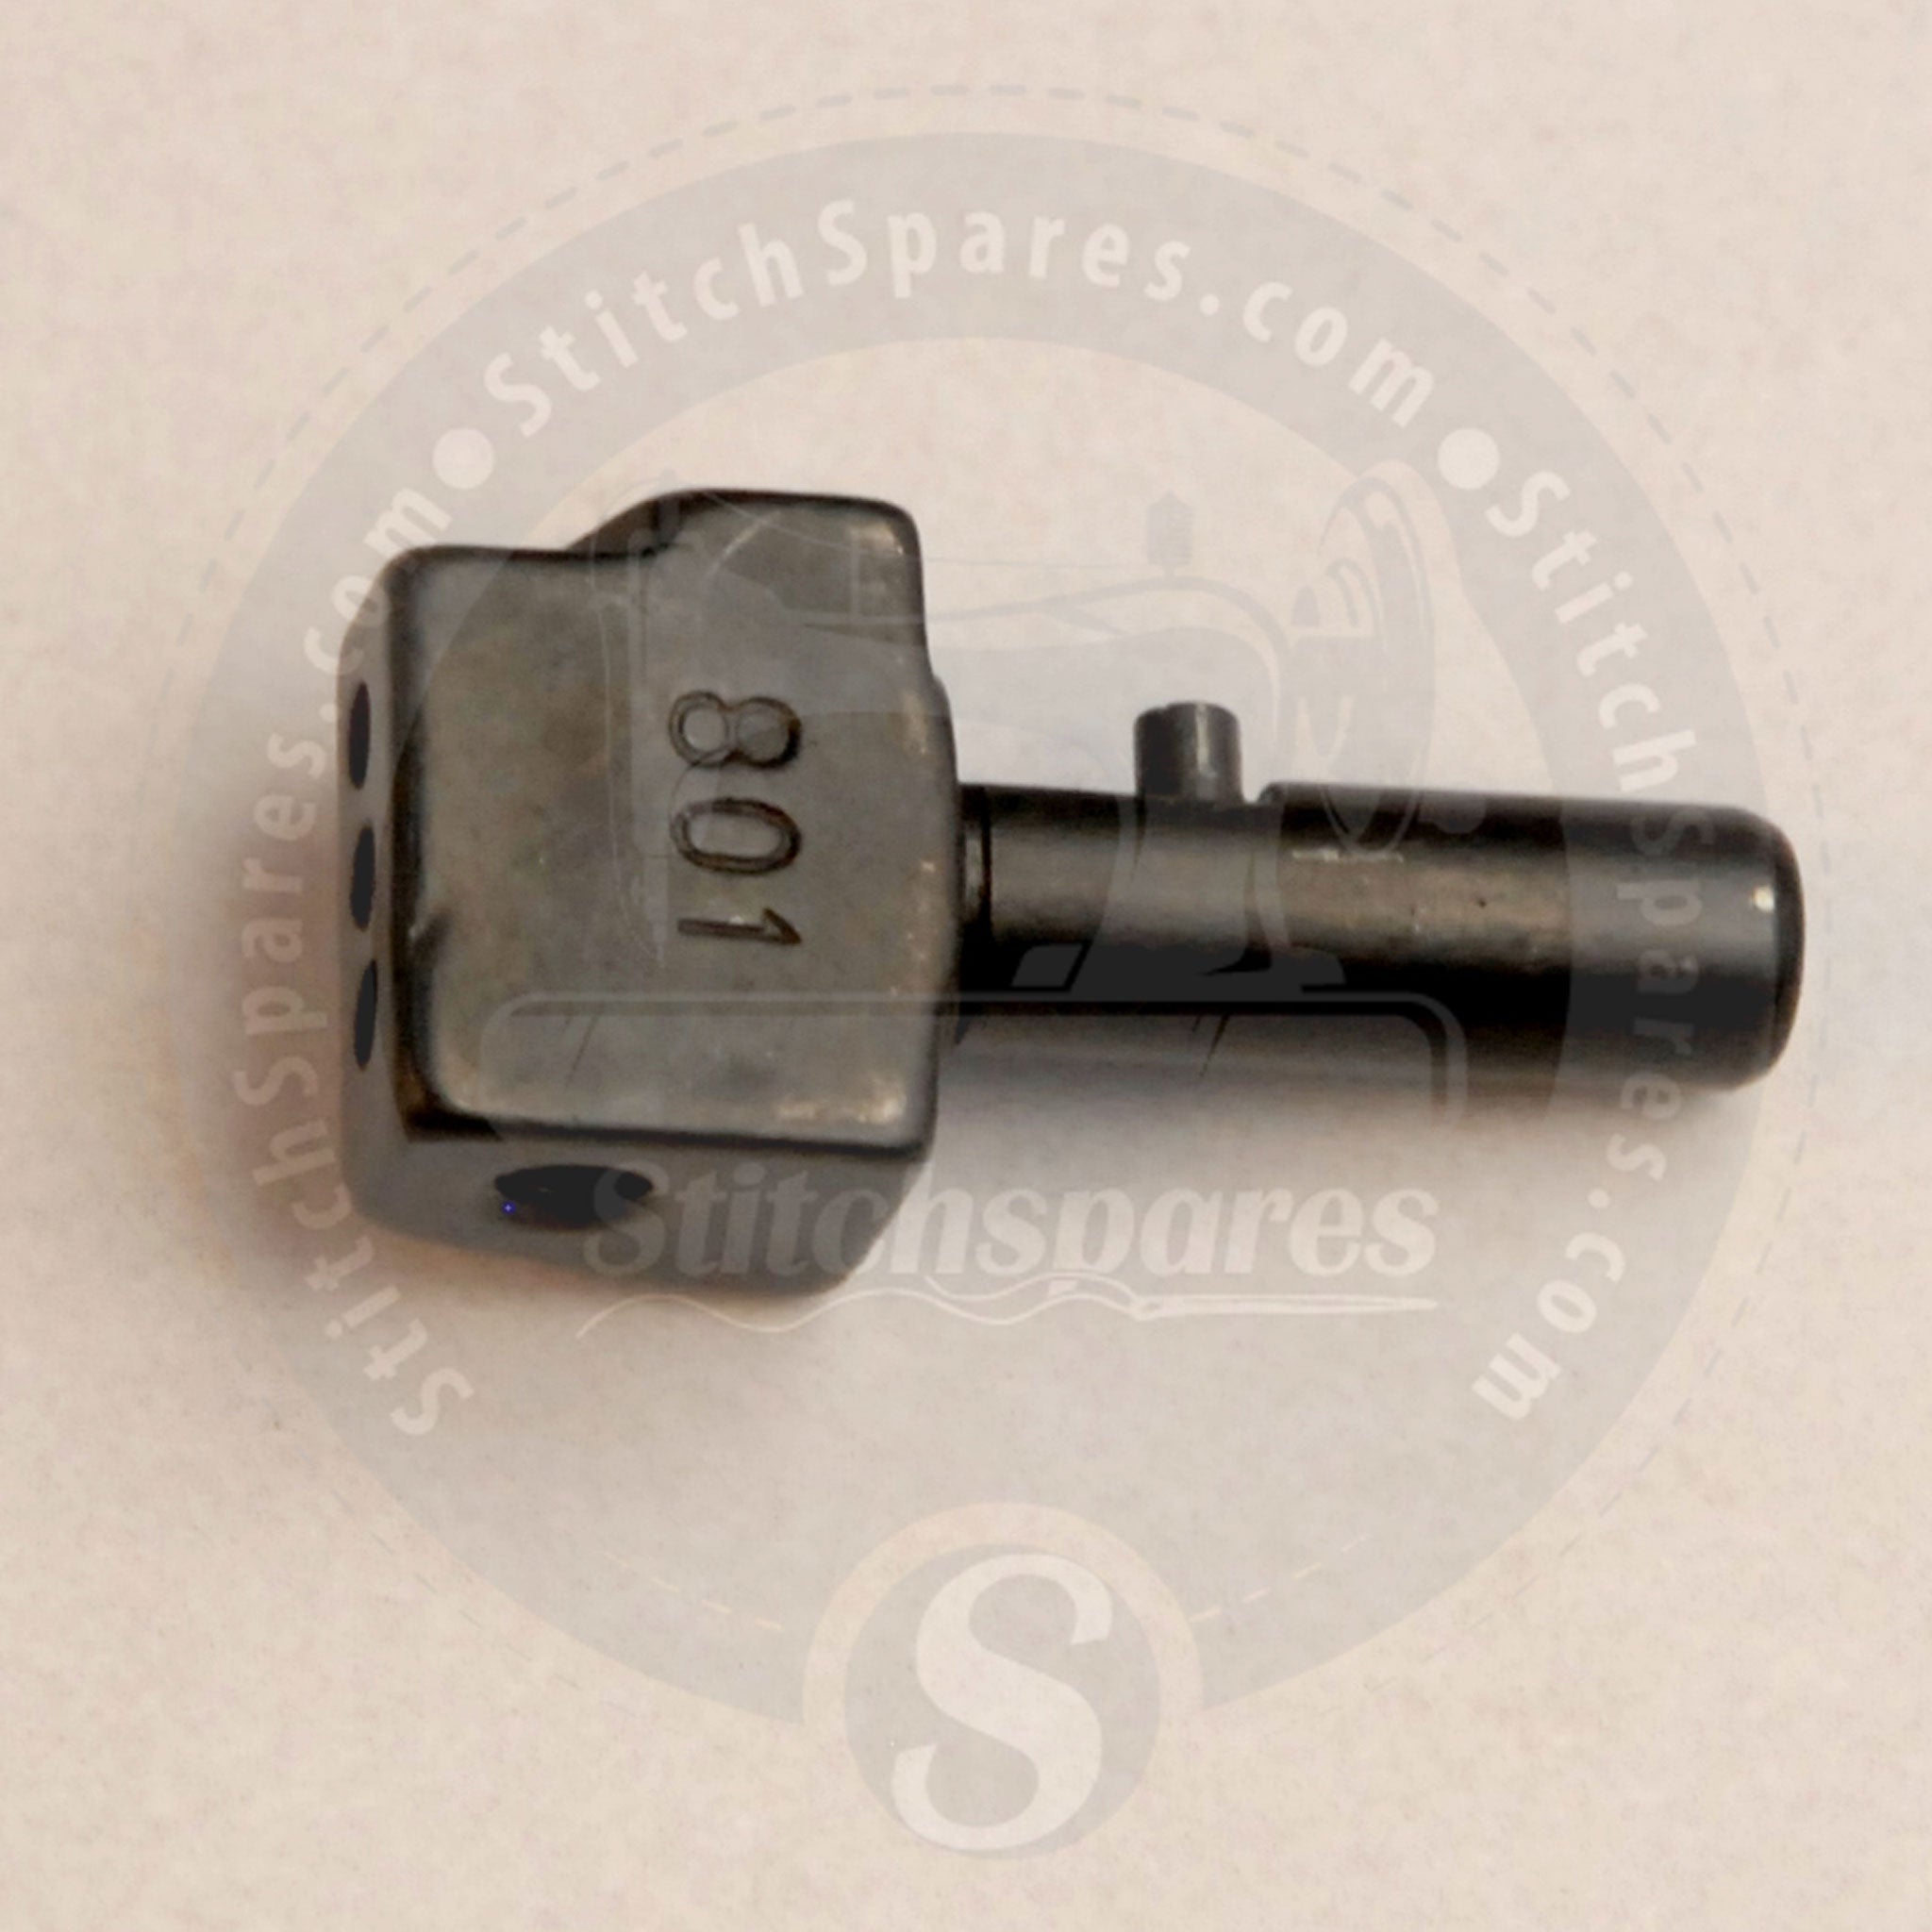 12-8010-1 Portaagujas para Kansai Special Flatlock (Interlock) WX8800 DVK1703D V7003D DWK1803D W8003D Máquina de coser industrial